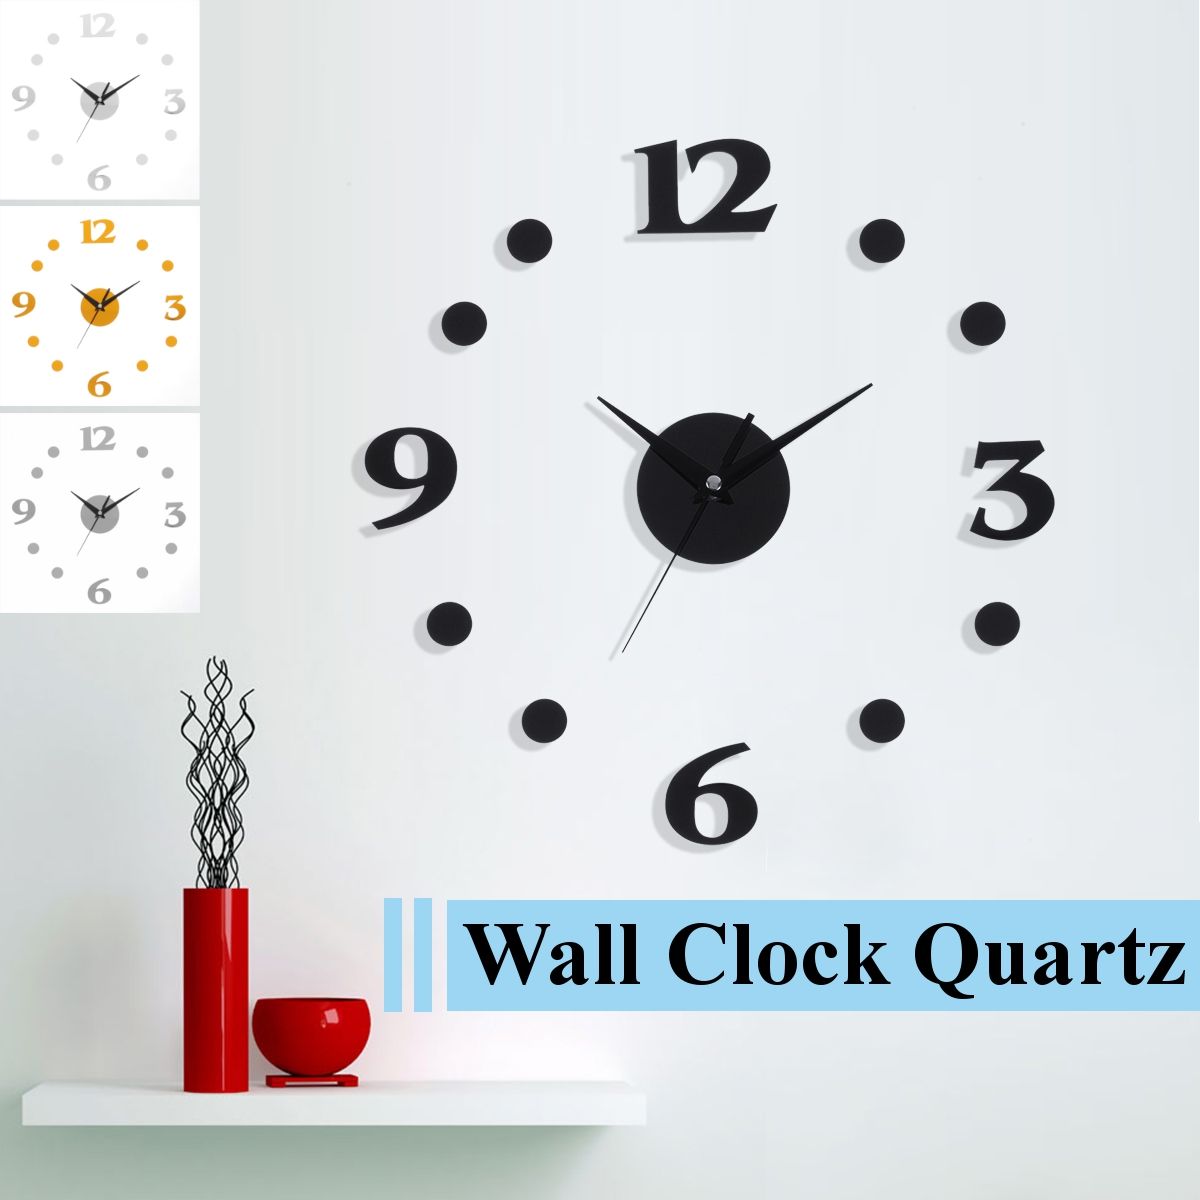 Wall-Clock-Quartz-Mini-Movement-Hands-Mechanism-Repair-Parts-Tool-Kit-DIY-Decor-1542029